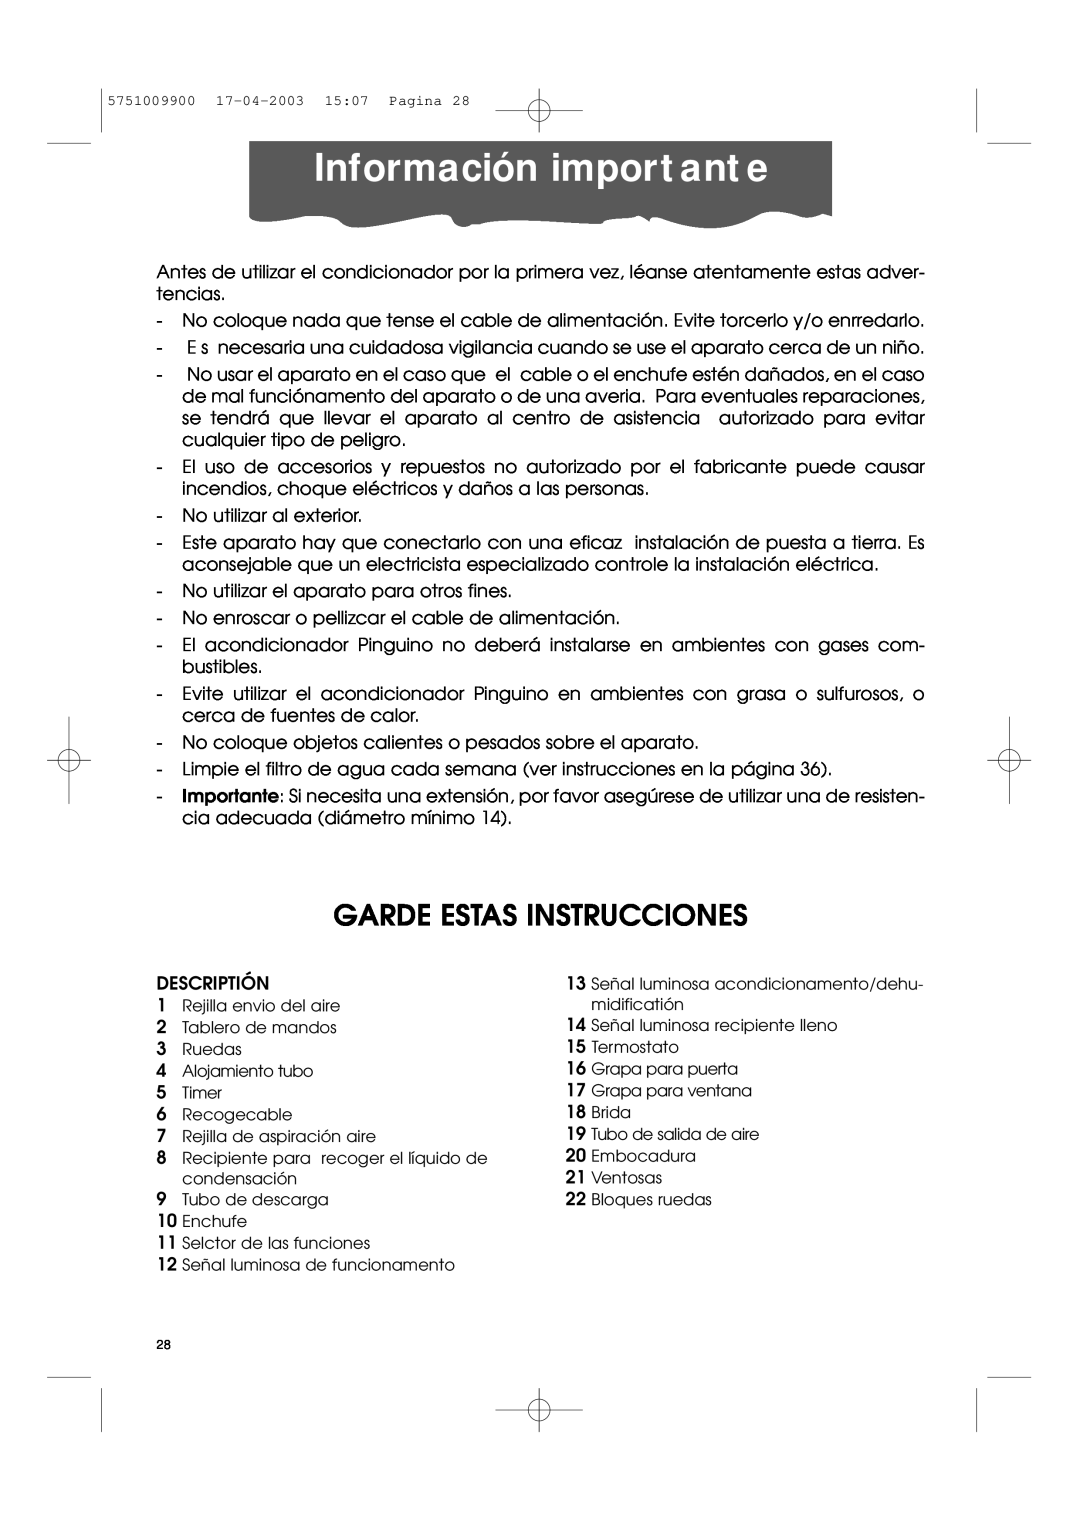 DeLonghi Pac 1000 manual Información importante, Garde Estas Instrucciones 